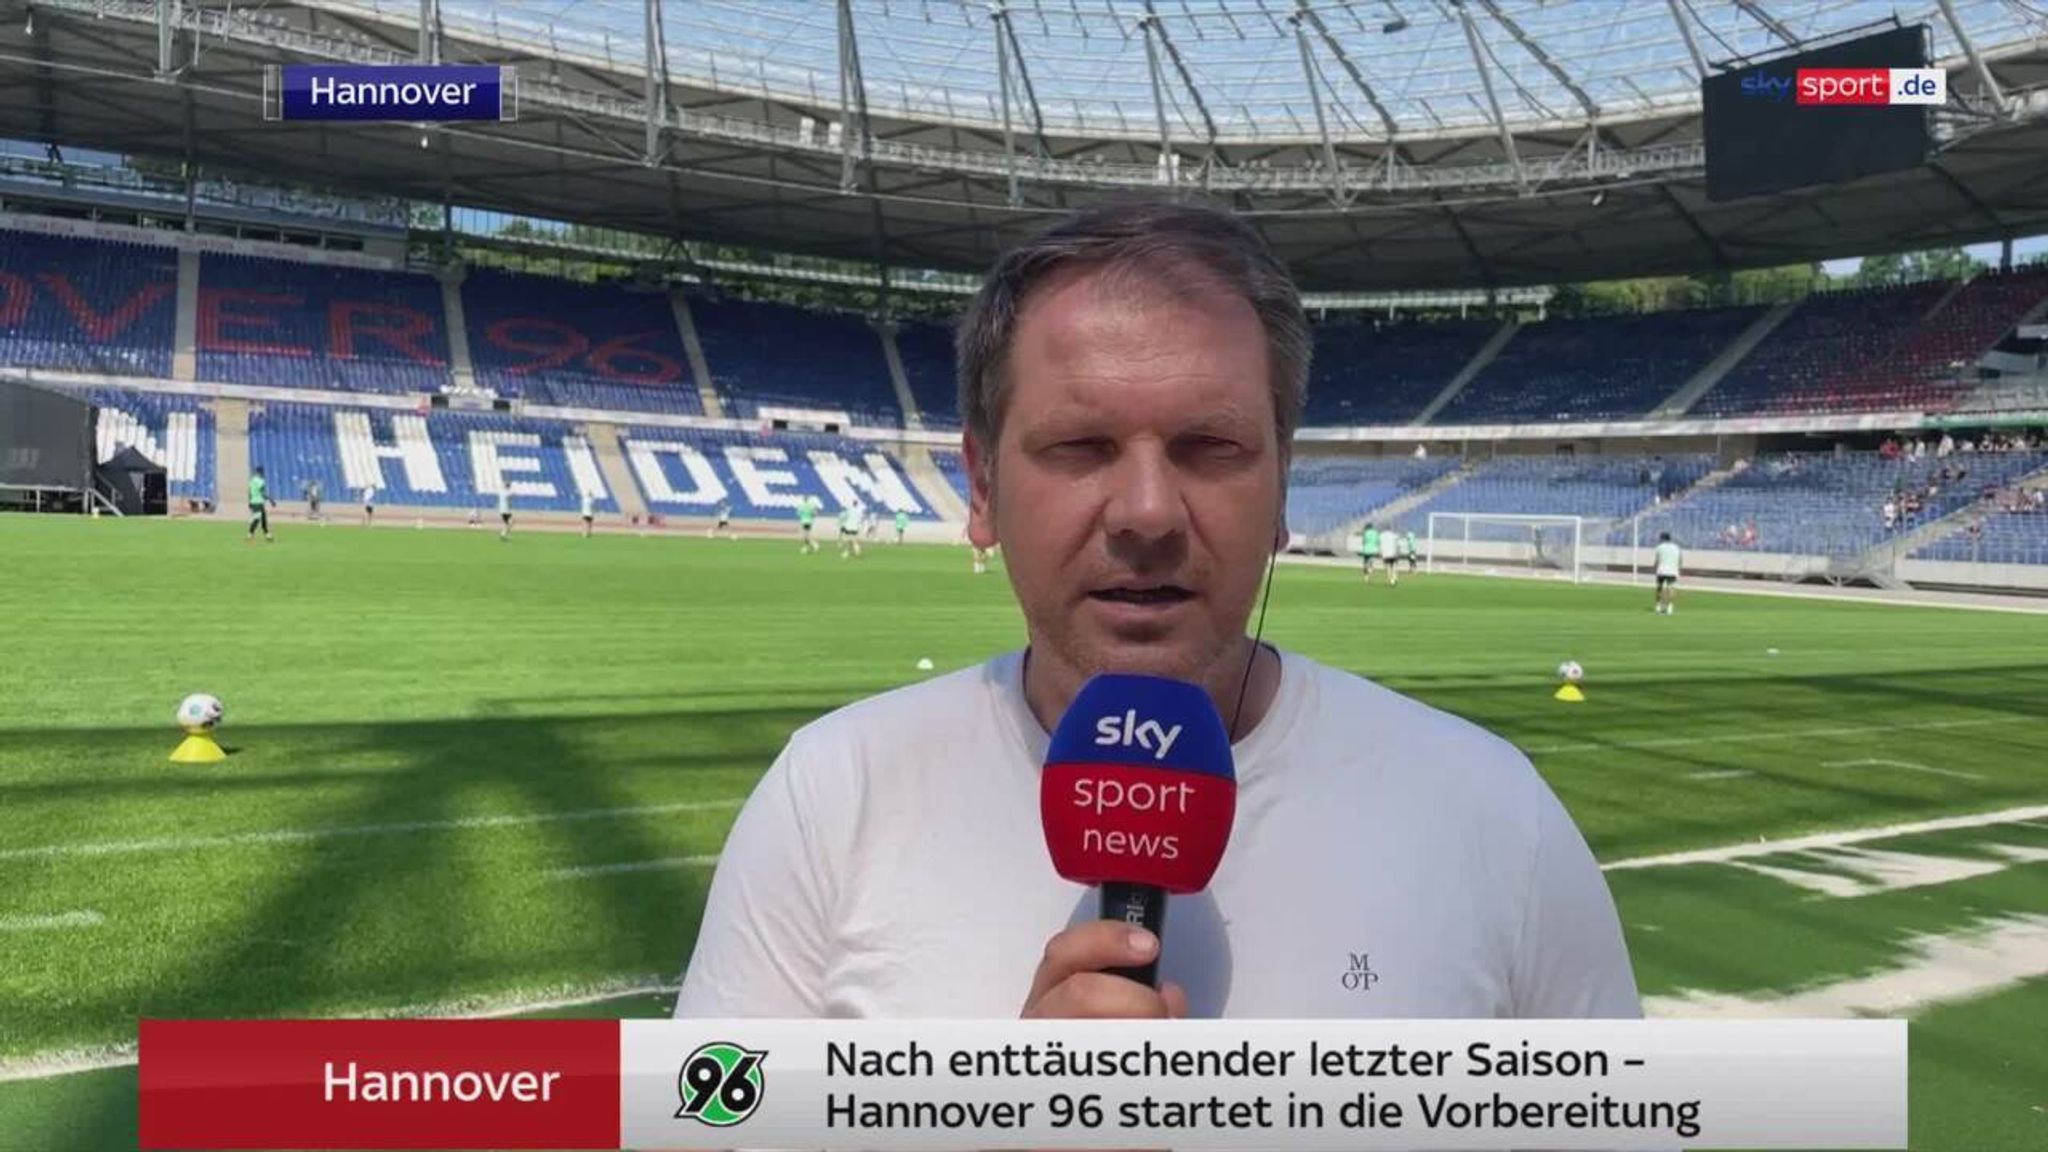 Hannover 96 startet in die Vorbereitung Fußball News Sky Sport